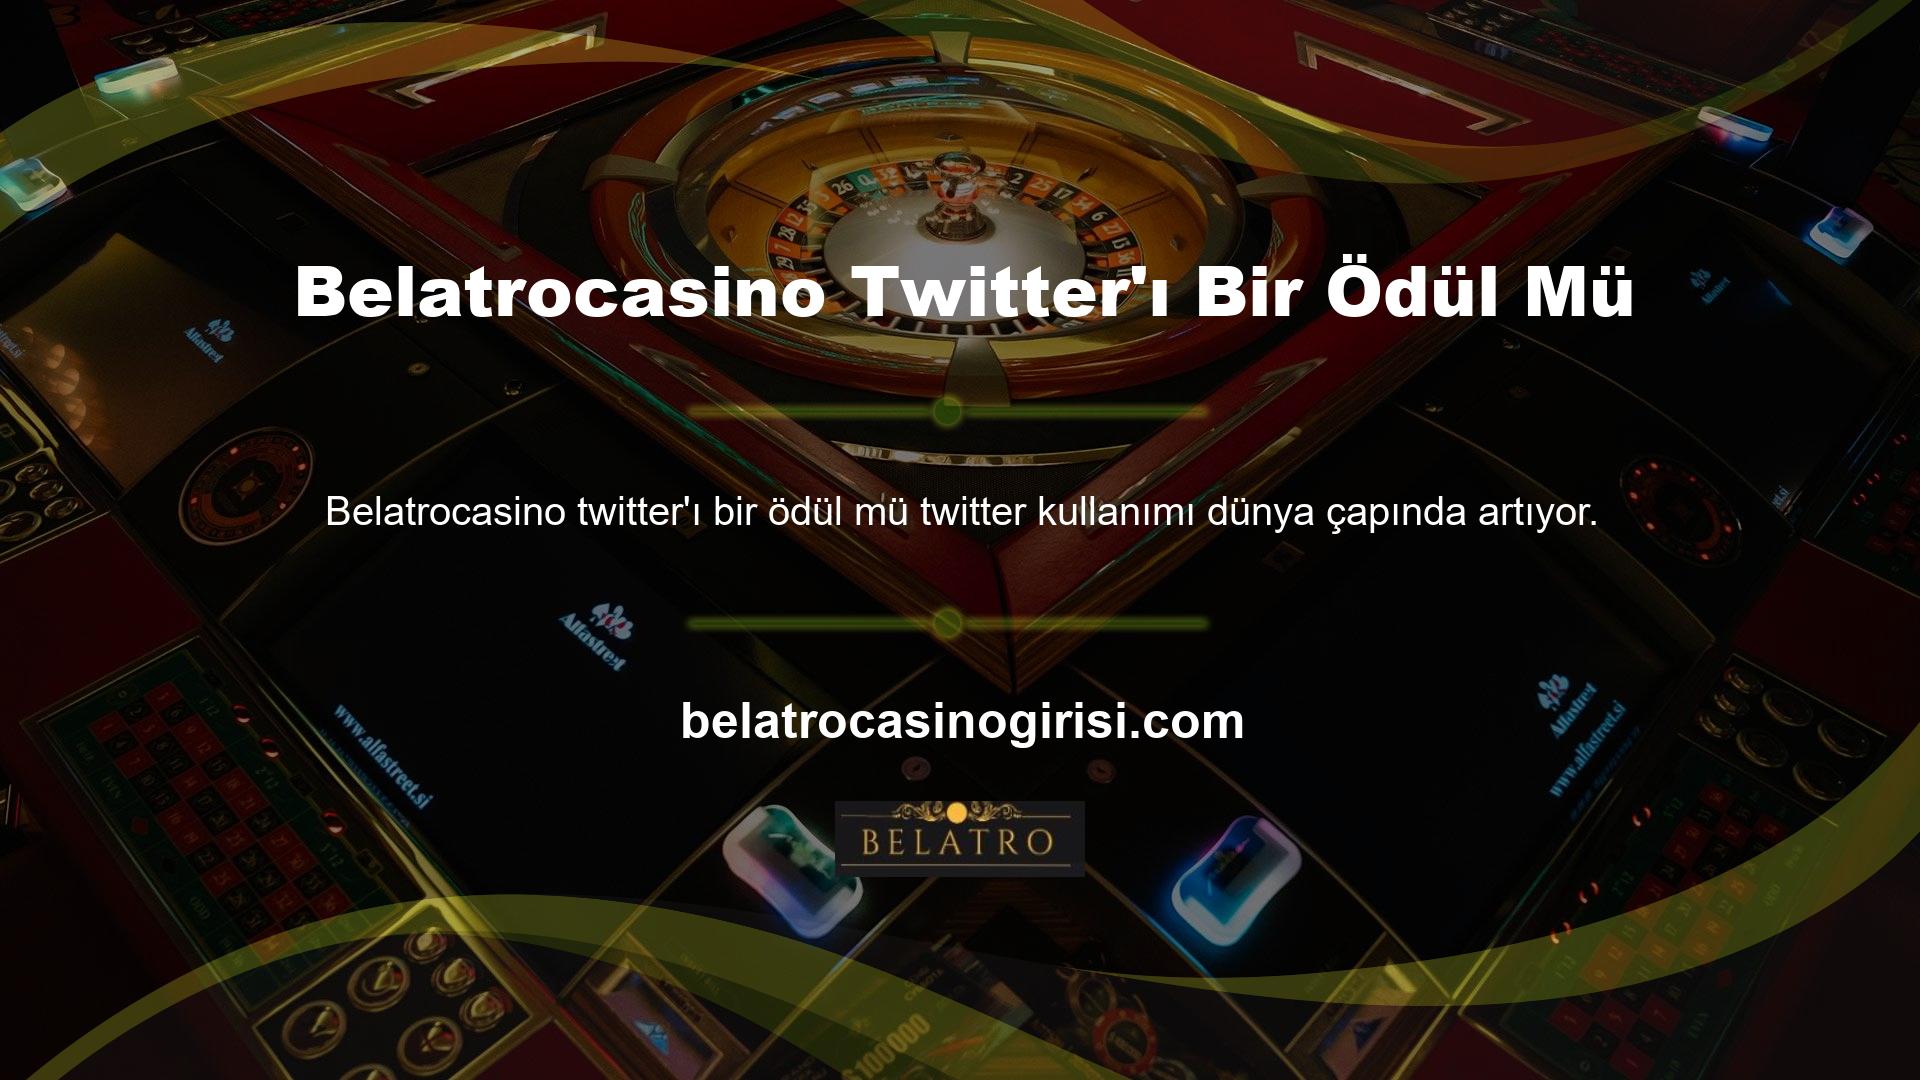 Bu nedenle casino siteleri, insanların bu sitelerde çok fazla vakit geçirdiğini fark ettikten sonra resmi Twitter sosyal medya hesaplarını açarlar